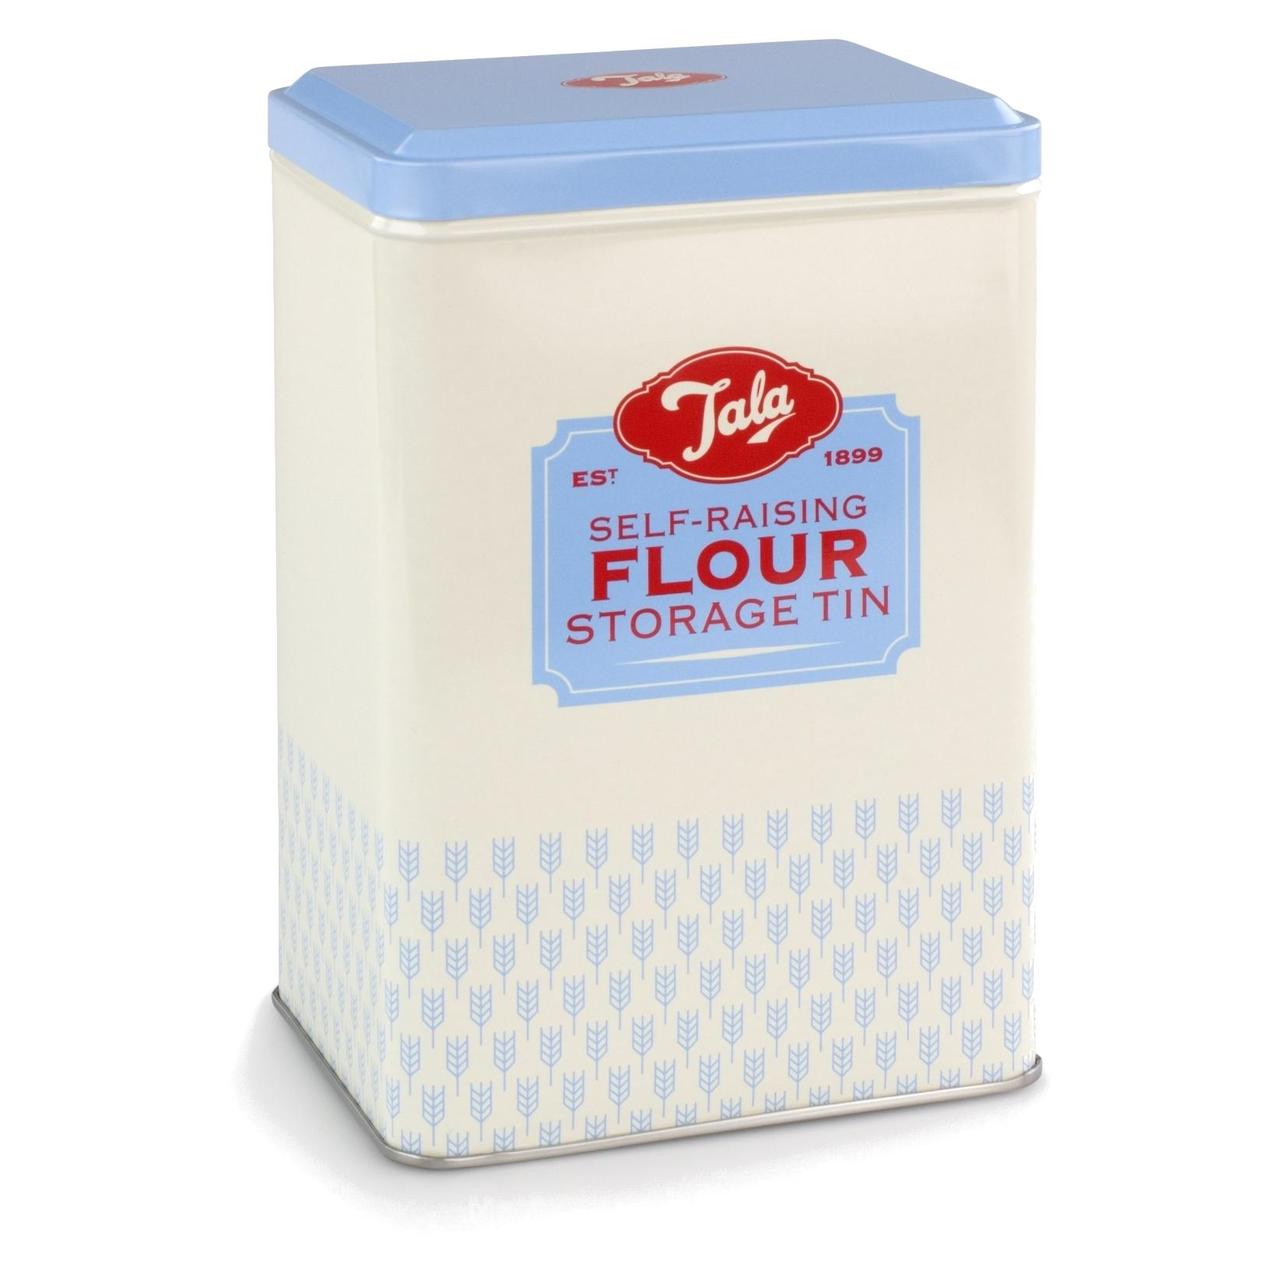 Tala Self Raising Flour Storage tin